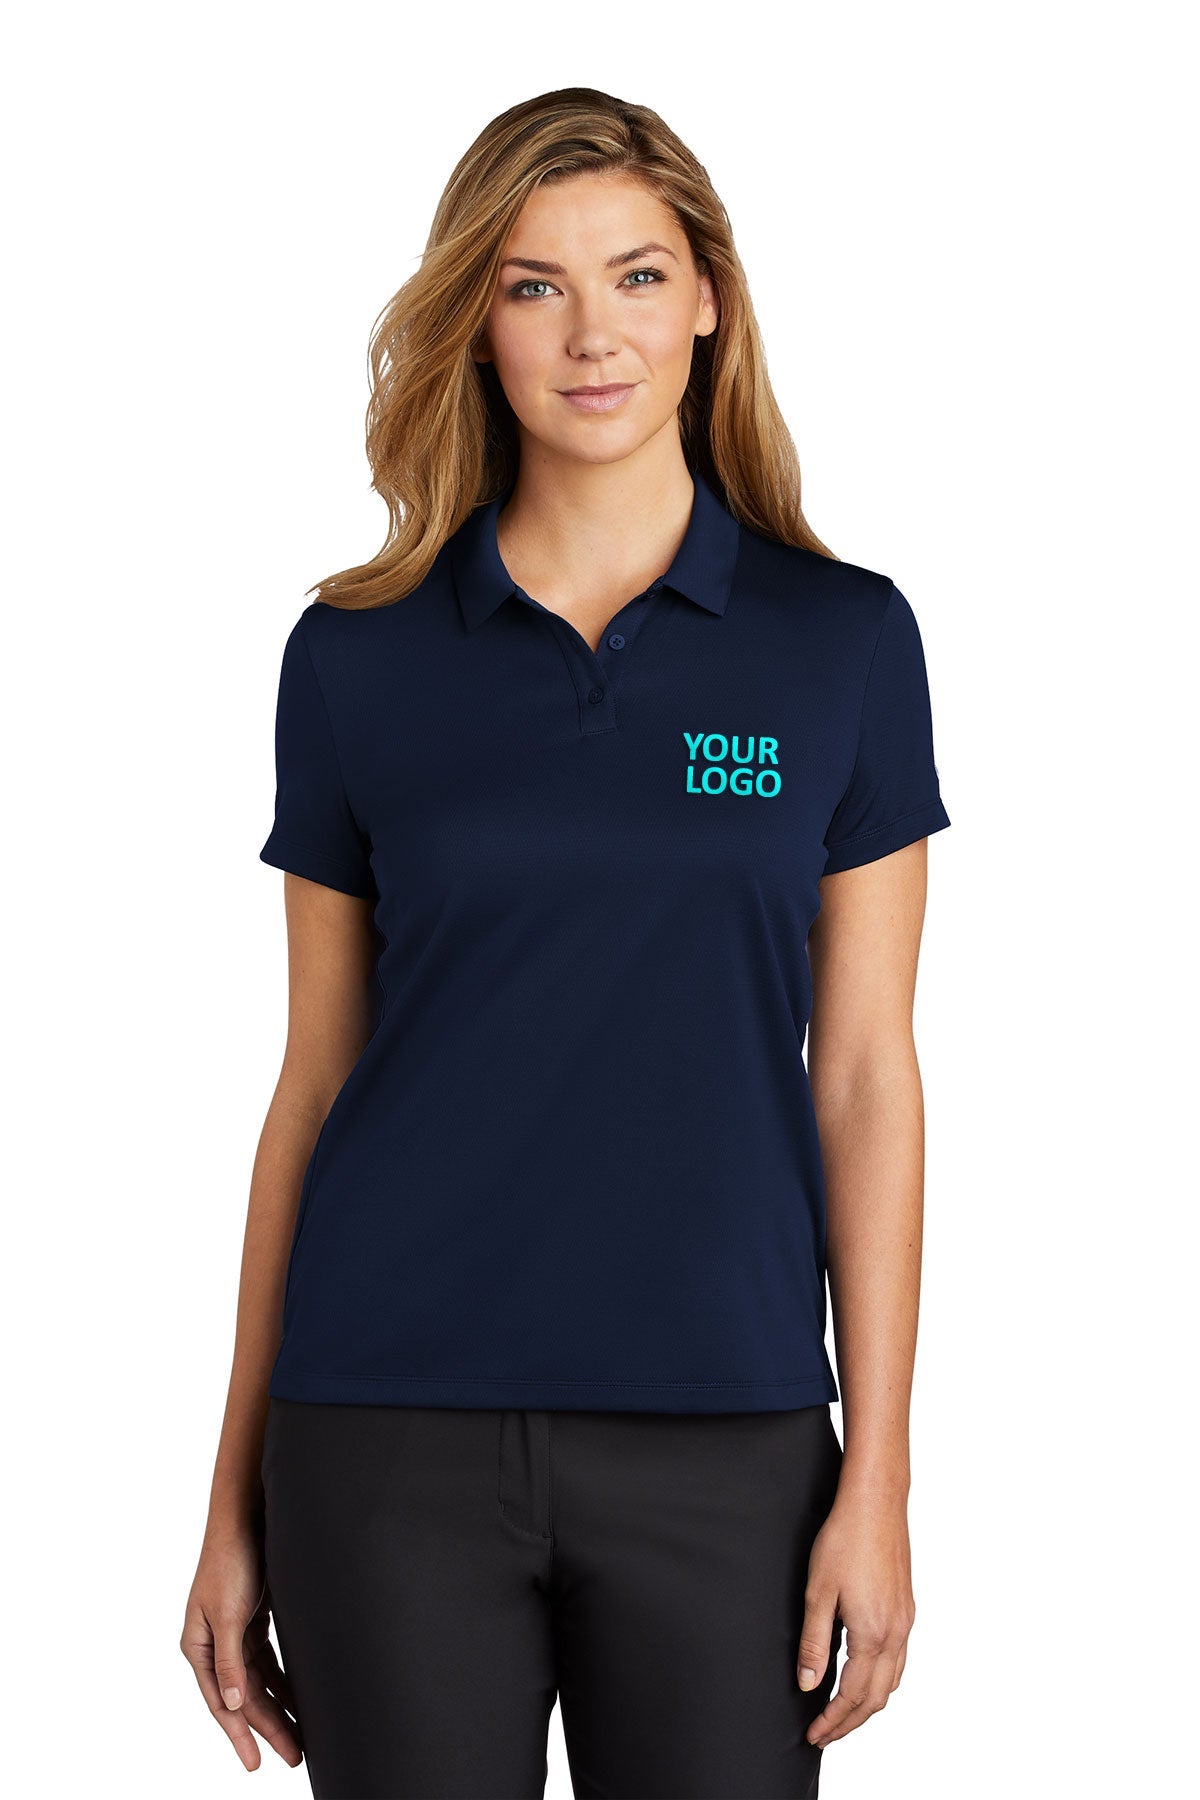 Nike Midnight Navy NKBV6043 custom logo polo shirts